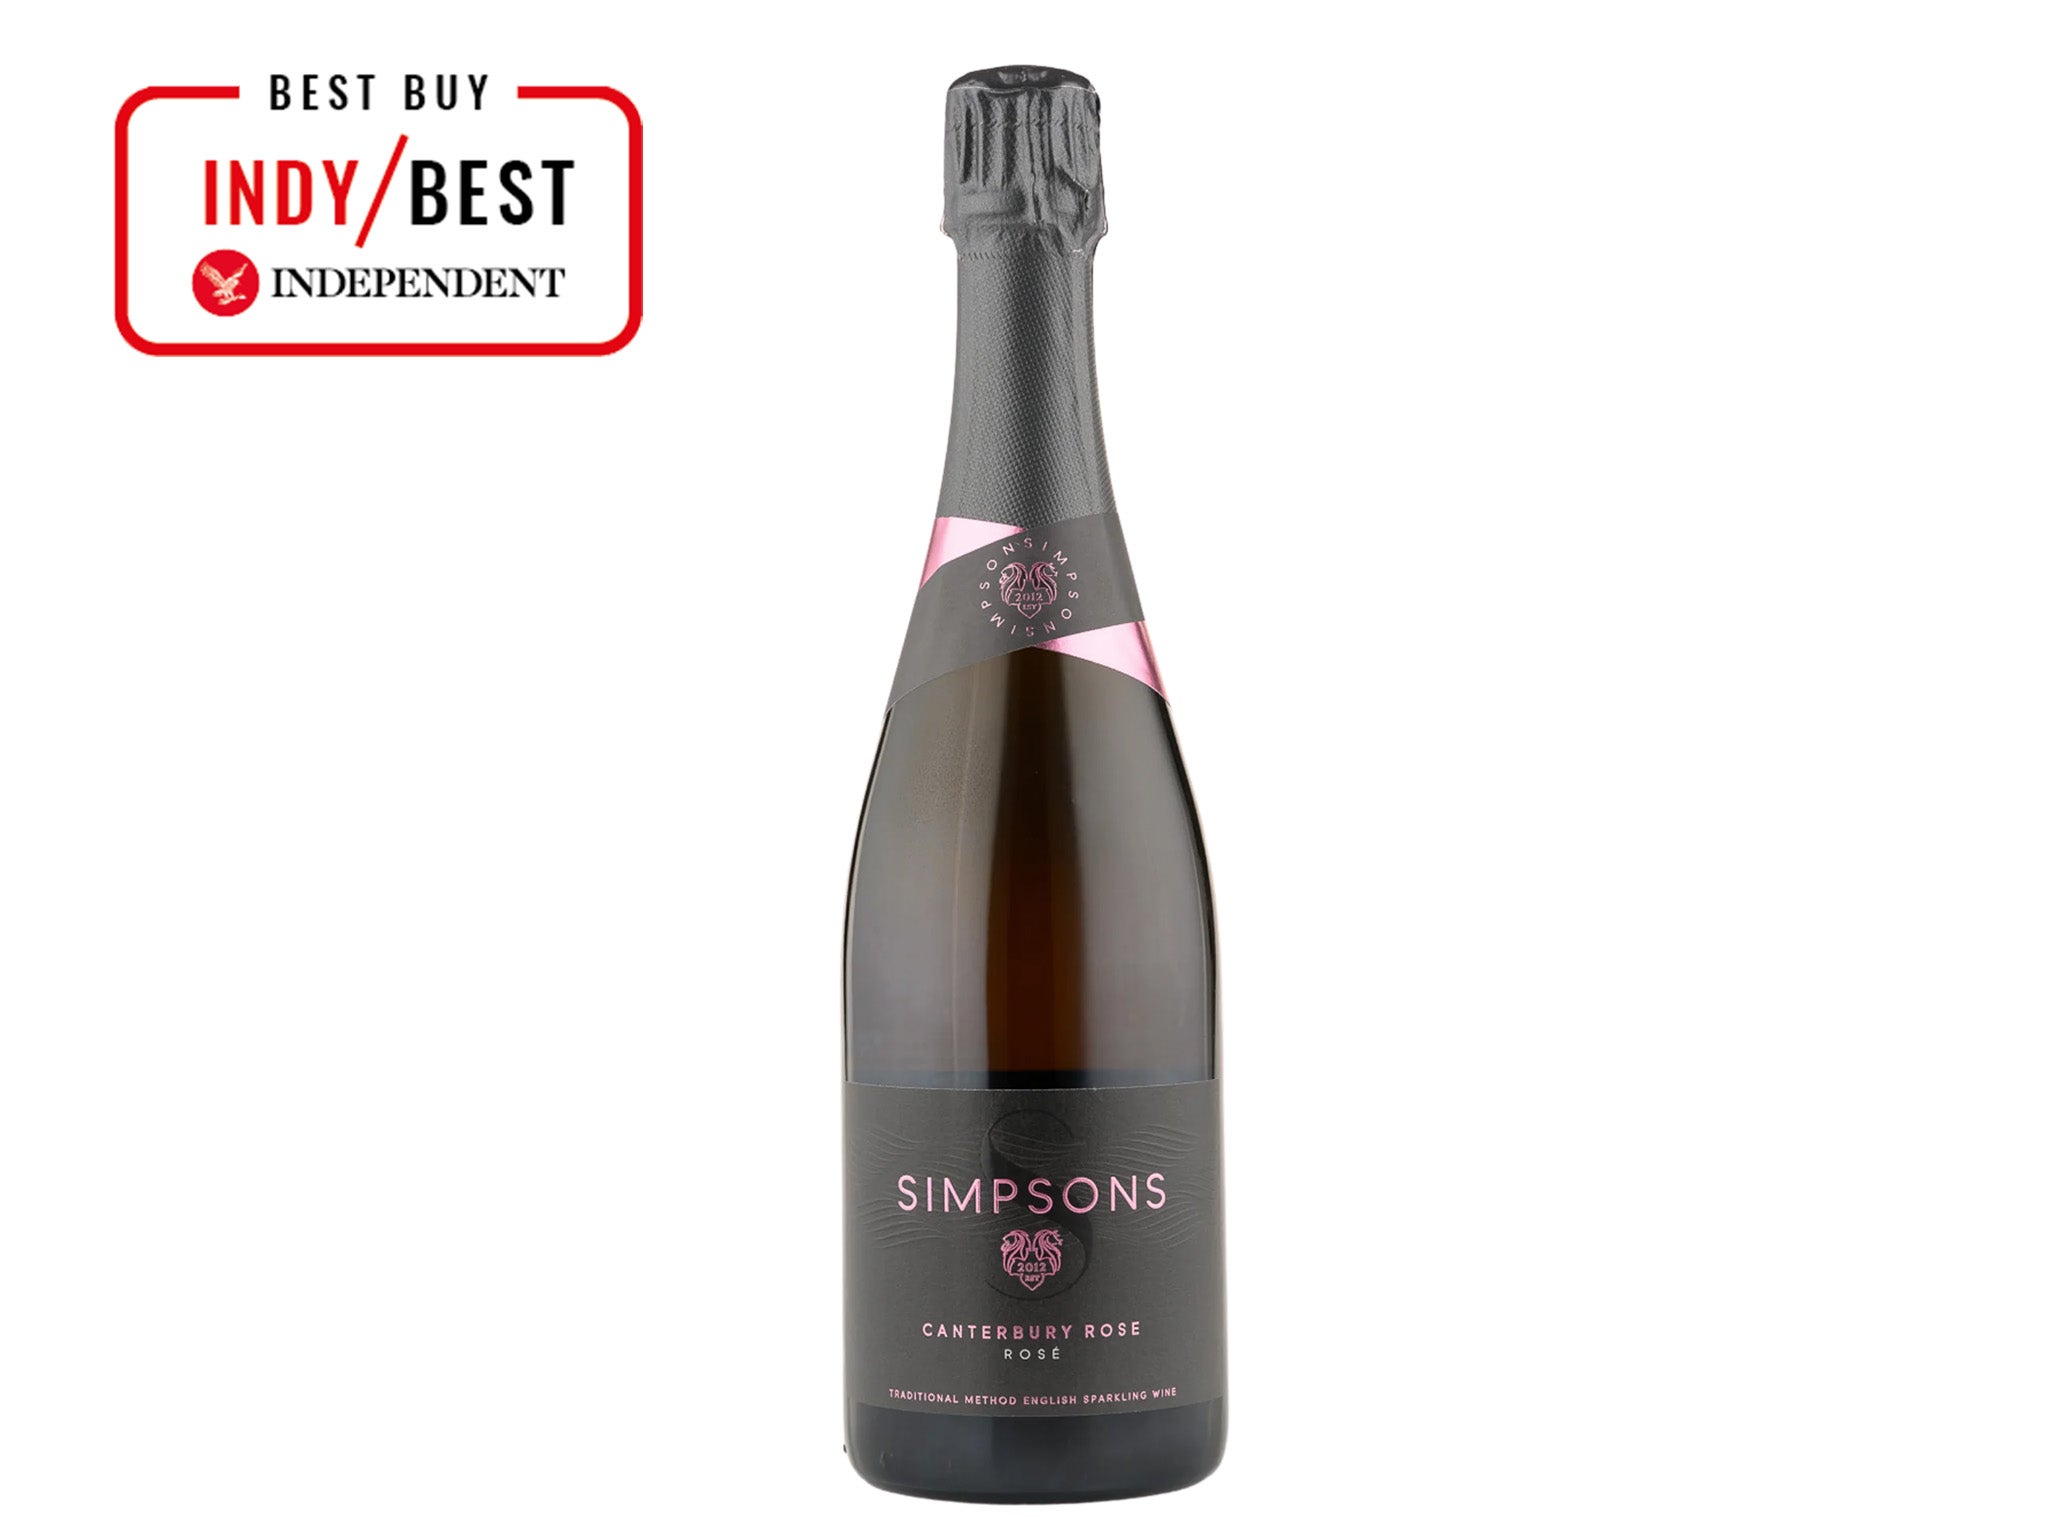 Simpsons wine estate canterbury rosé 2019